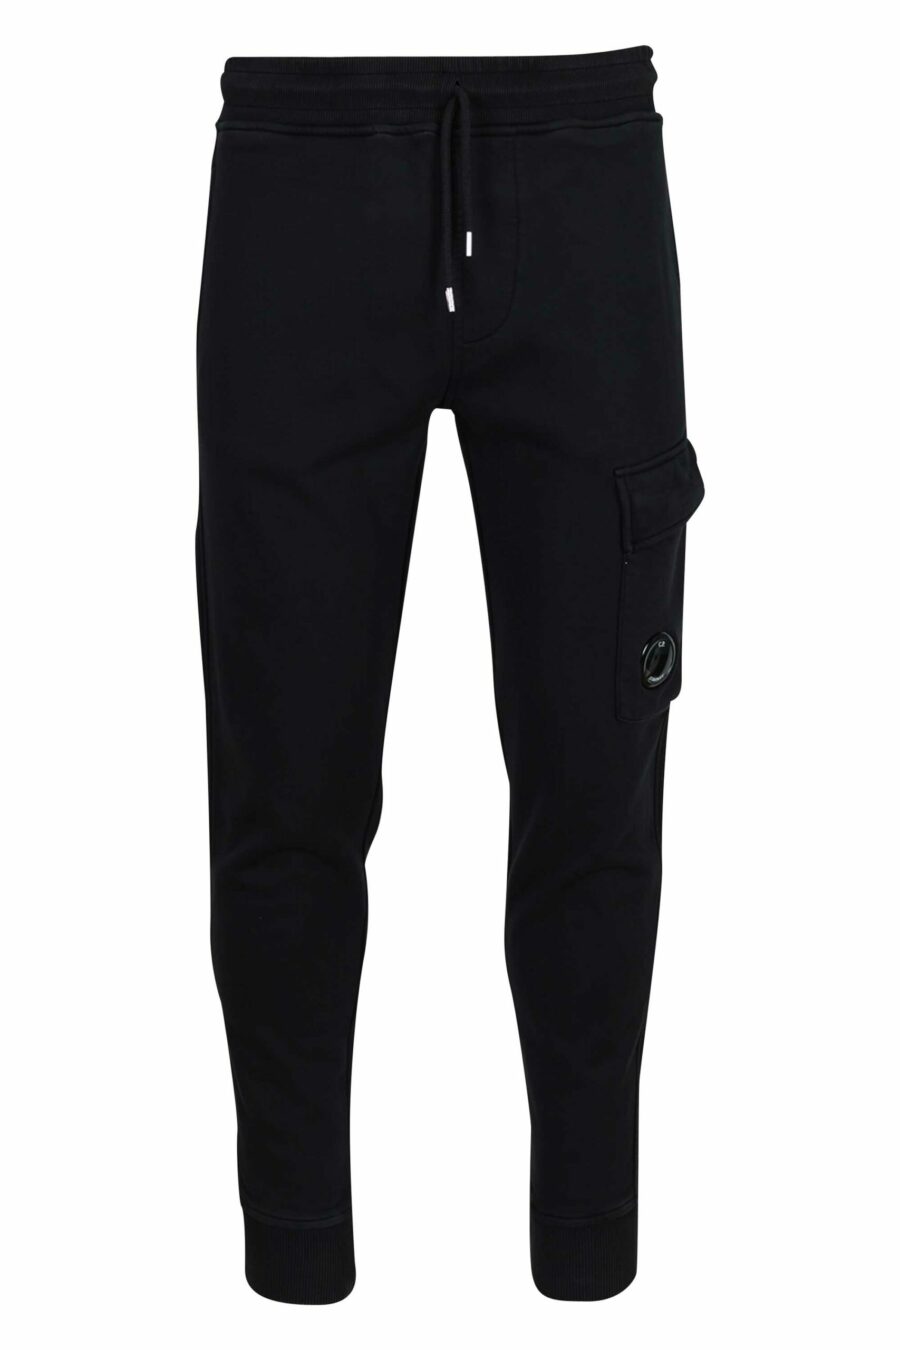 Pantalón de chándal negro estilo cargo con minilogo lente - 7620943739947 scaled